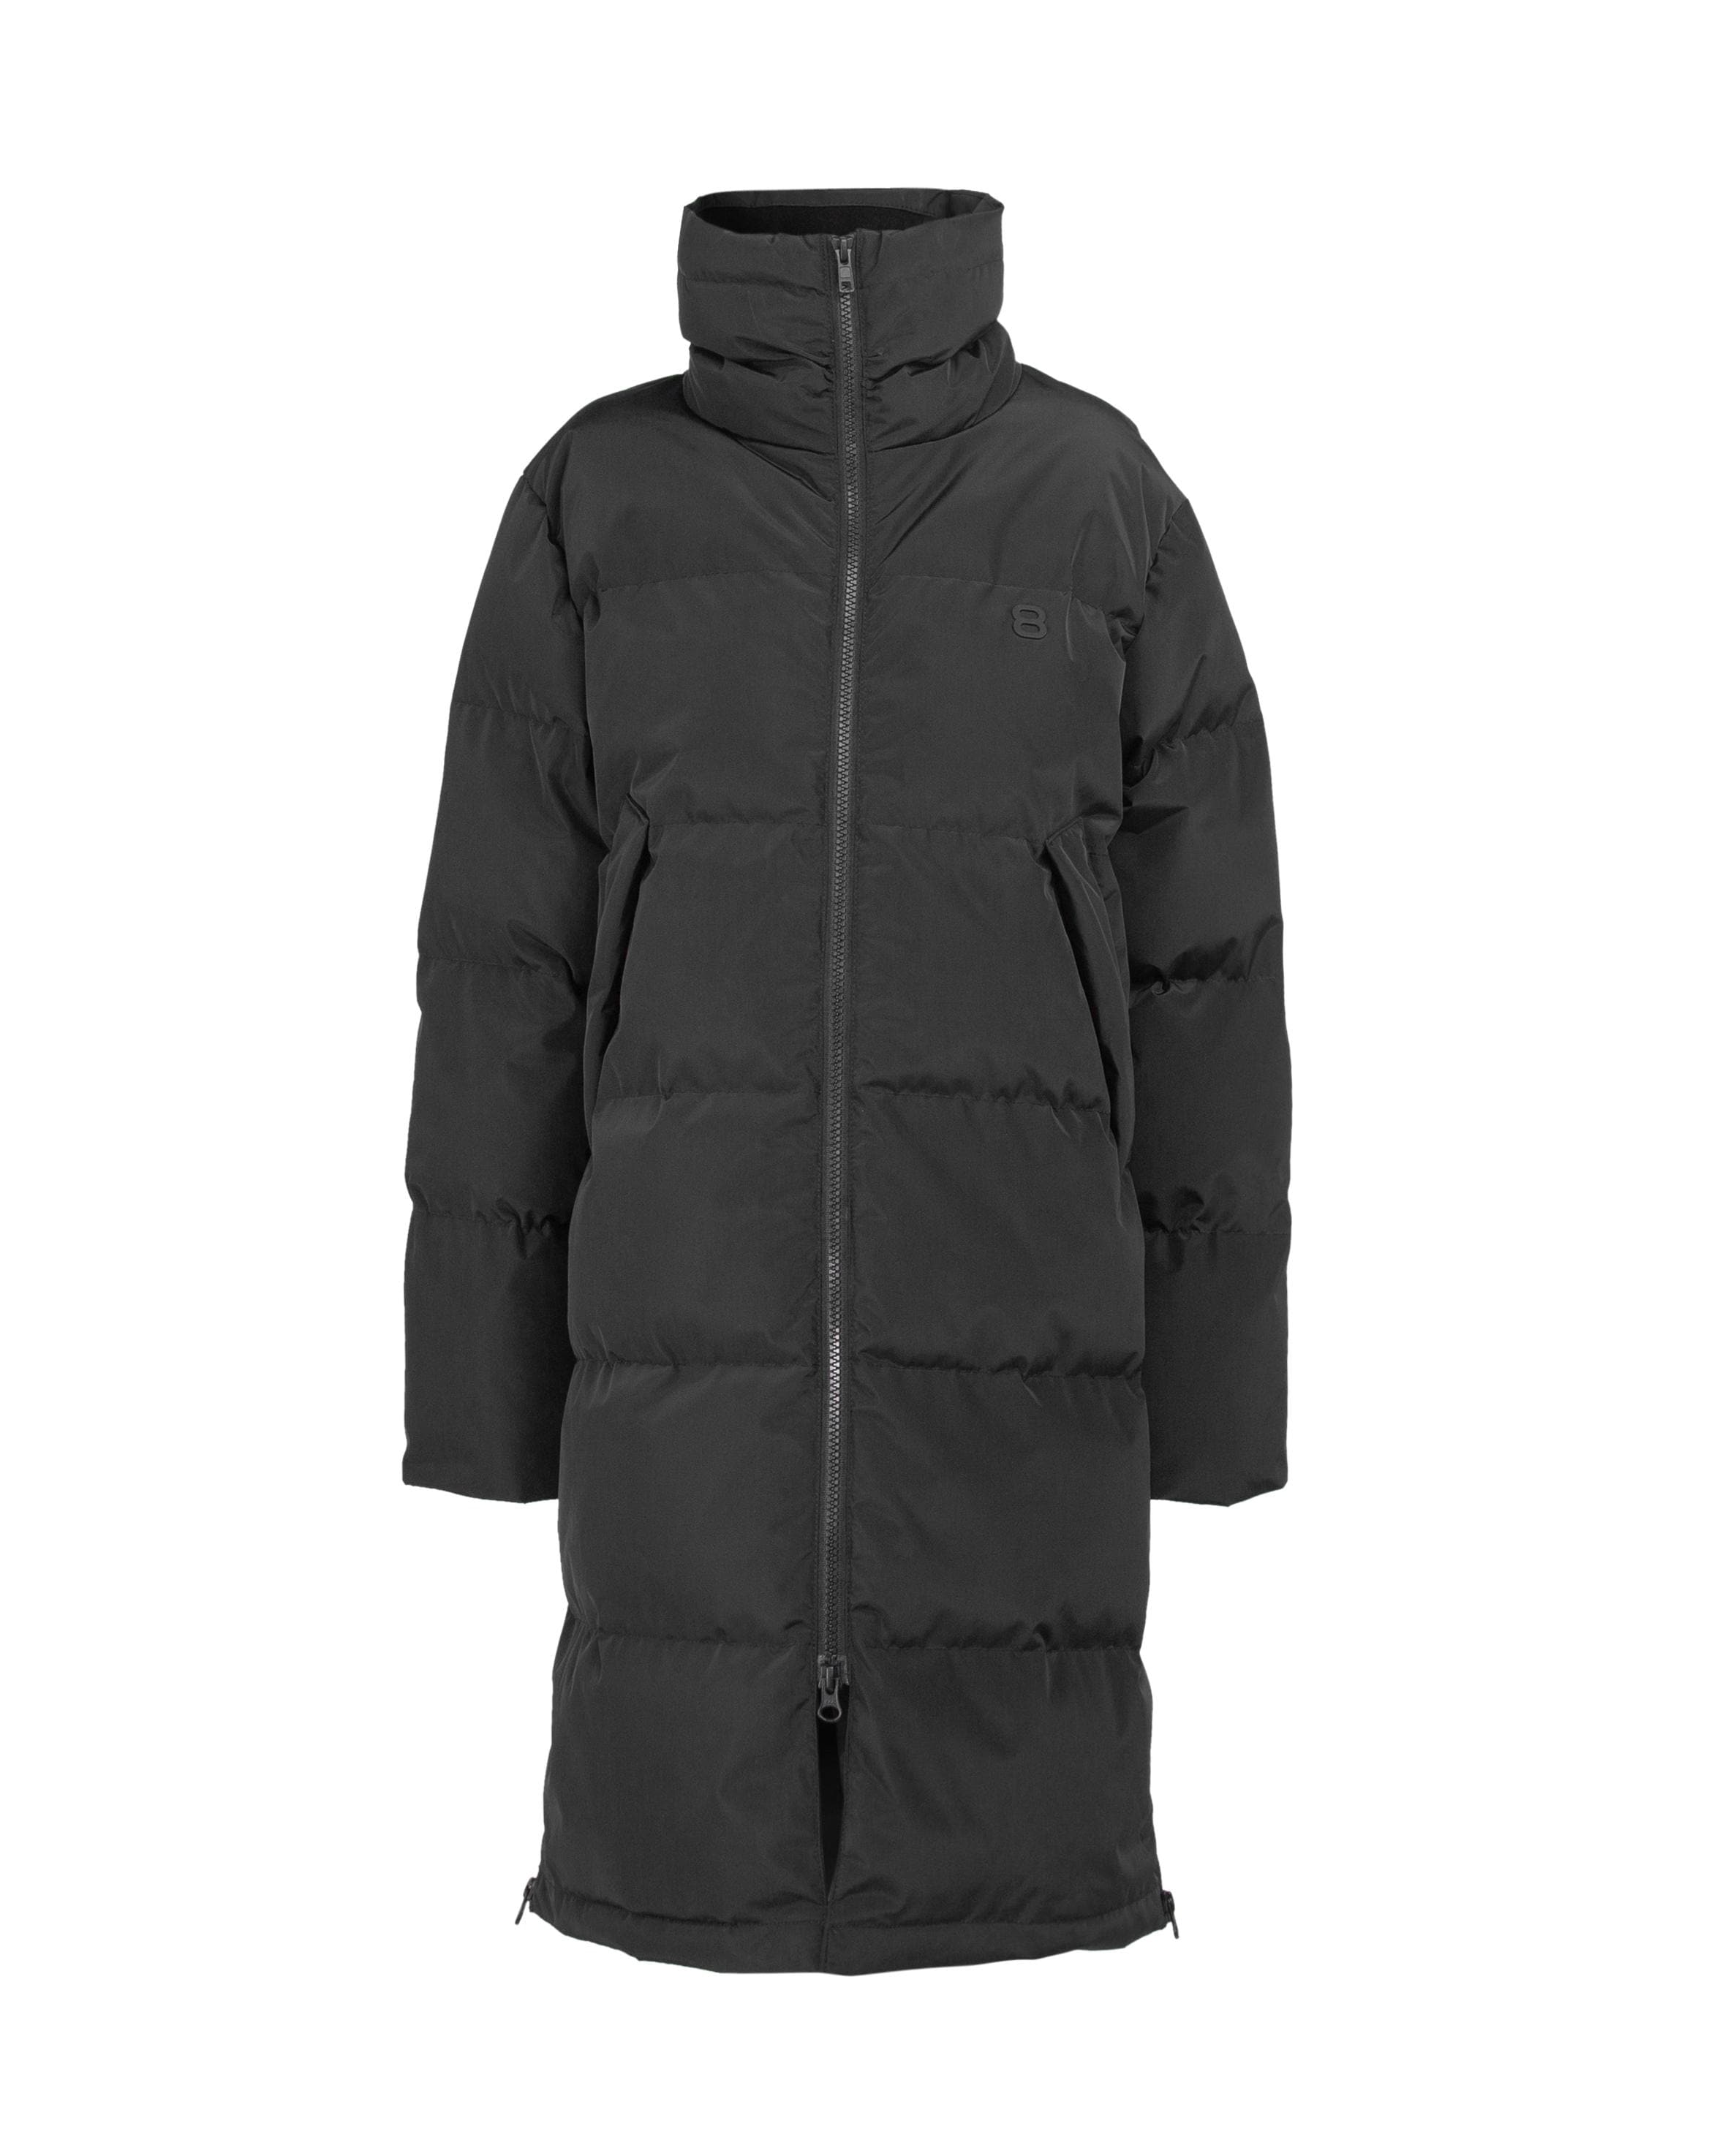 Lunell JR Coat Black - Black winter jacket kids